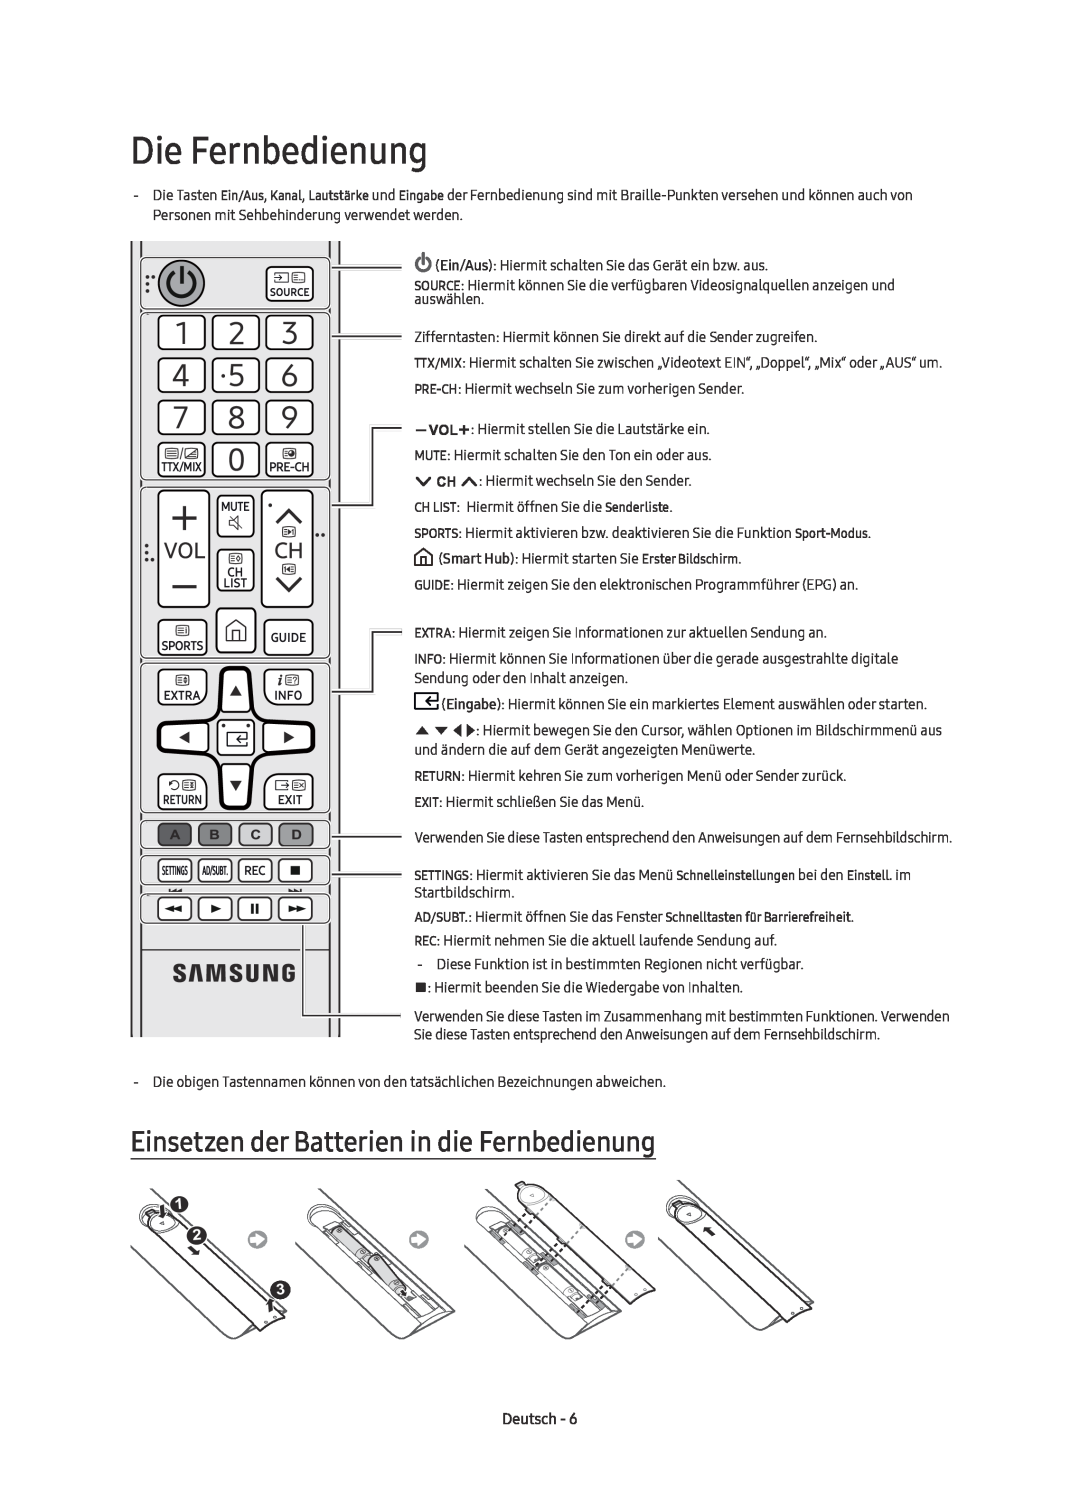 Samsung UE49KU6510UXXU, UE55KU6510UXZG manual Die Fernbedienung, Einsetzen der Batterien in die Fernbedienung, Deutsch 